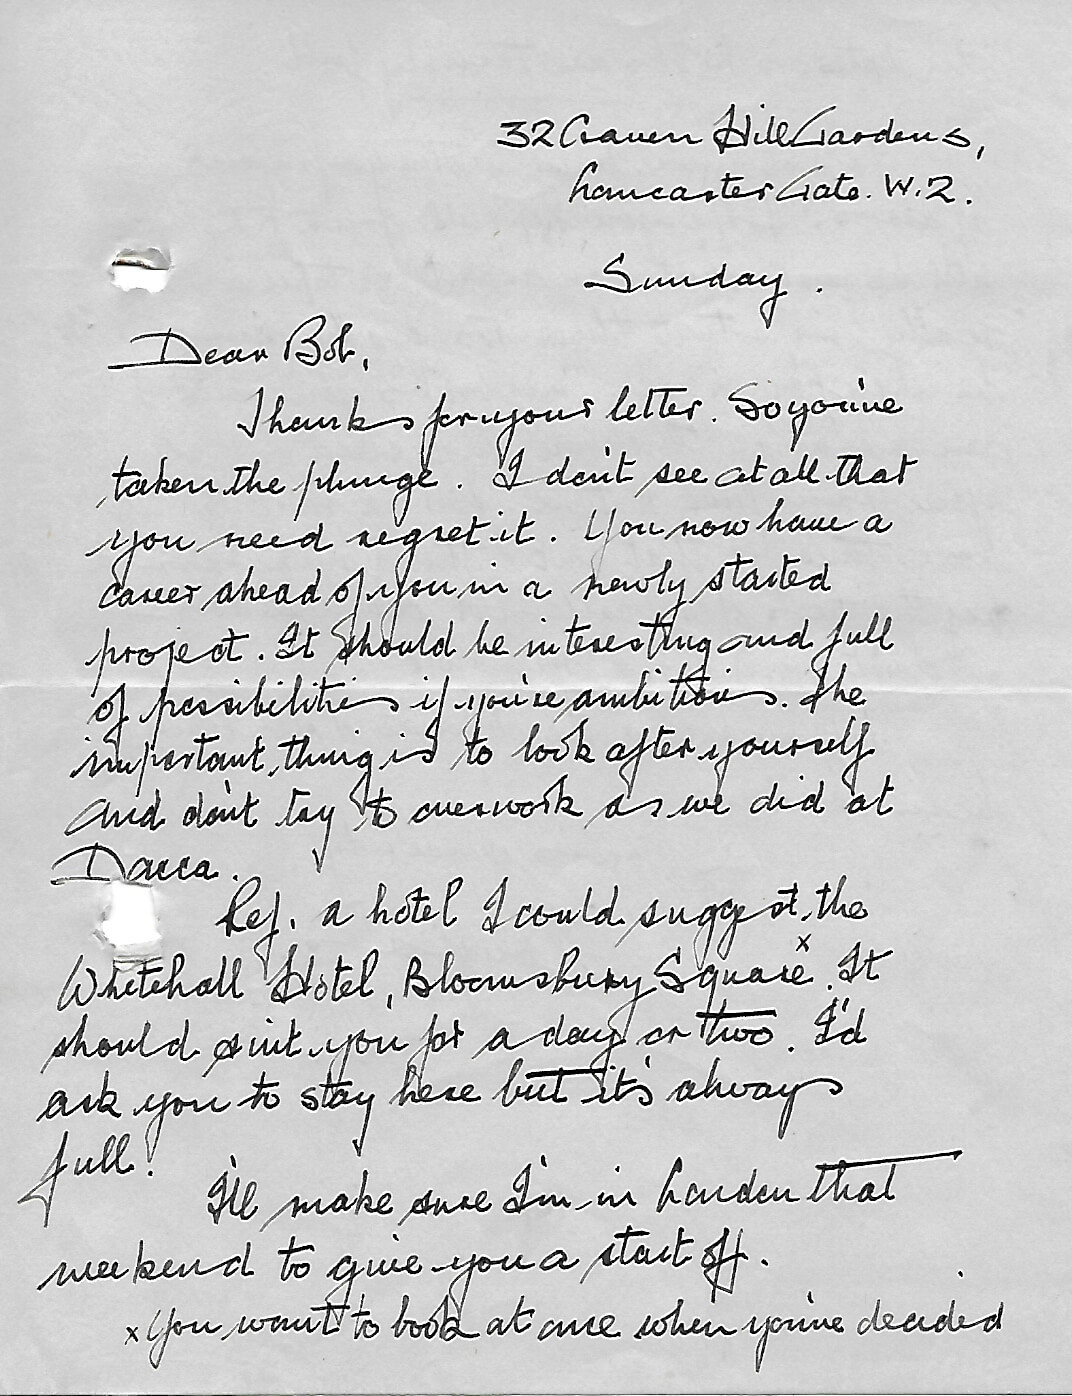 14 Mar 1948 - E D Kassell letter